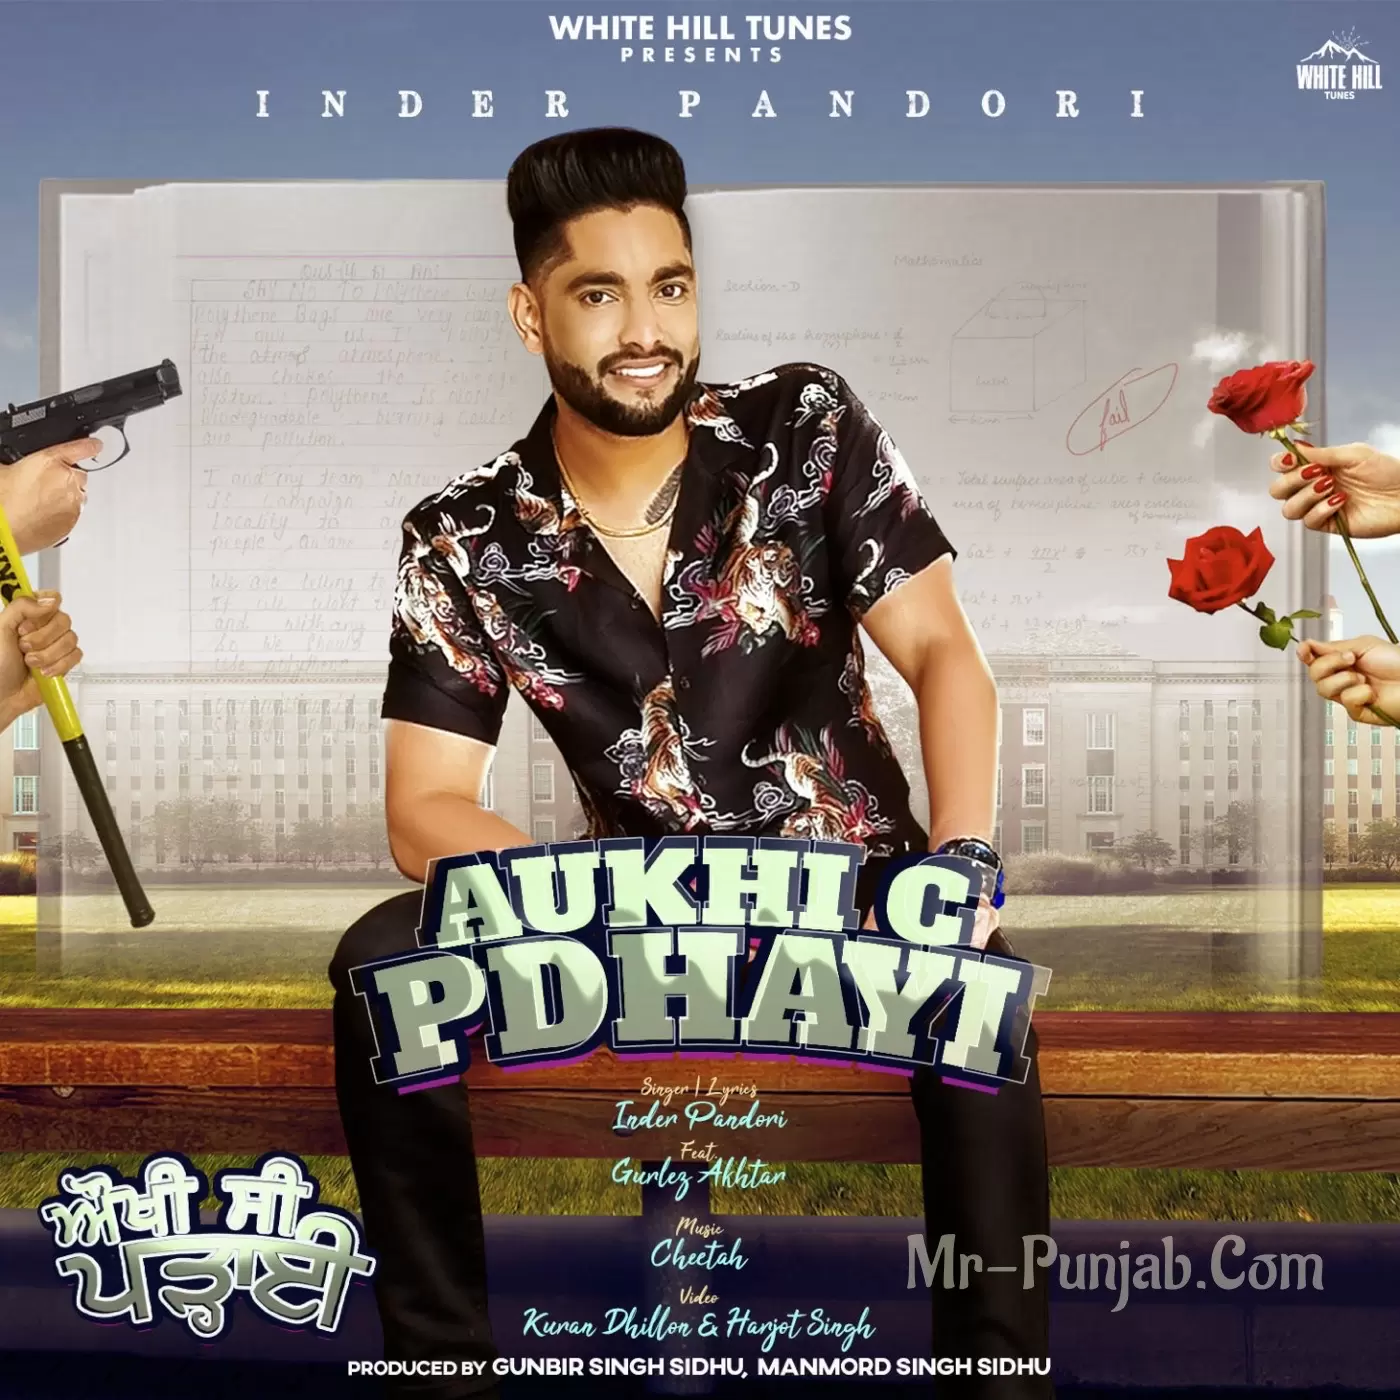 Aukhi C Pdhayi Inder Pandori Mp3 Download Song - Mr-Punjab